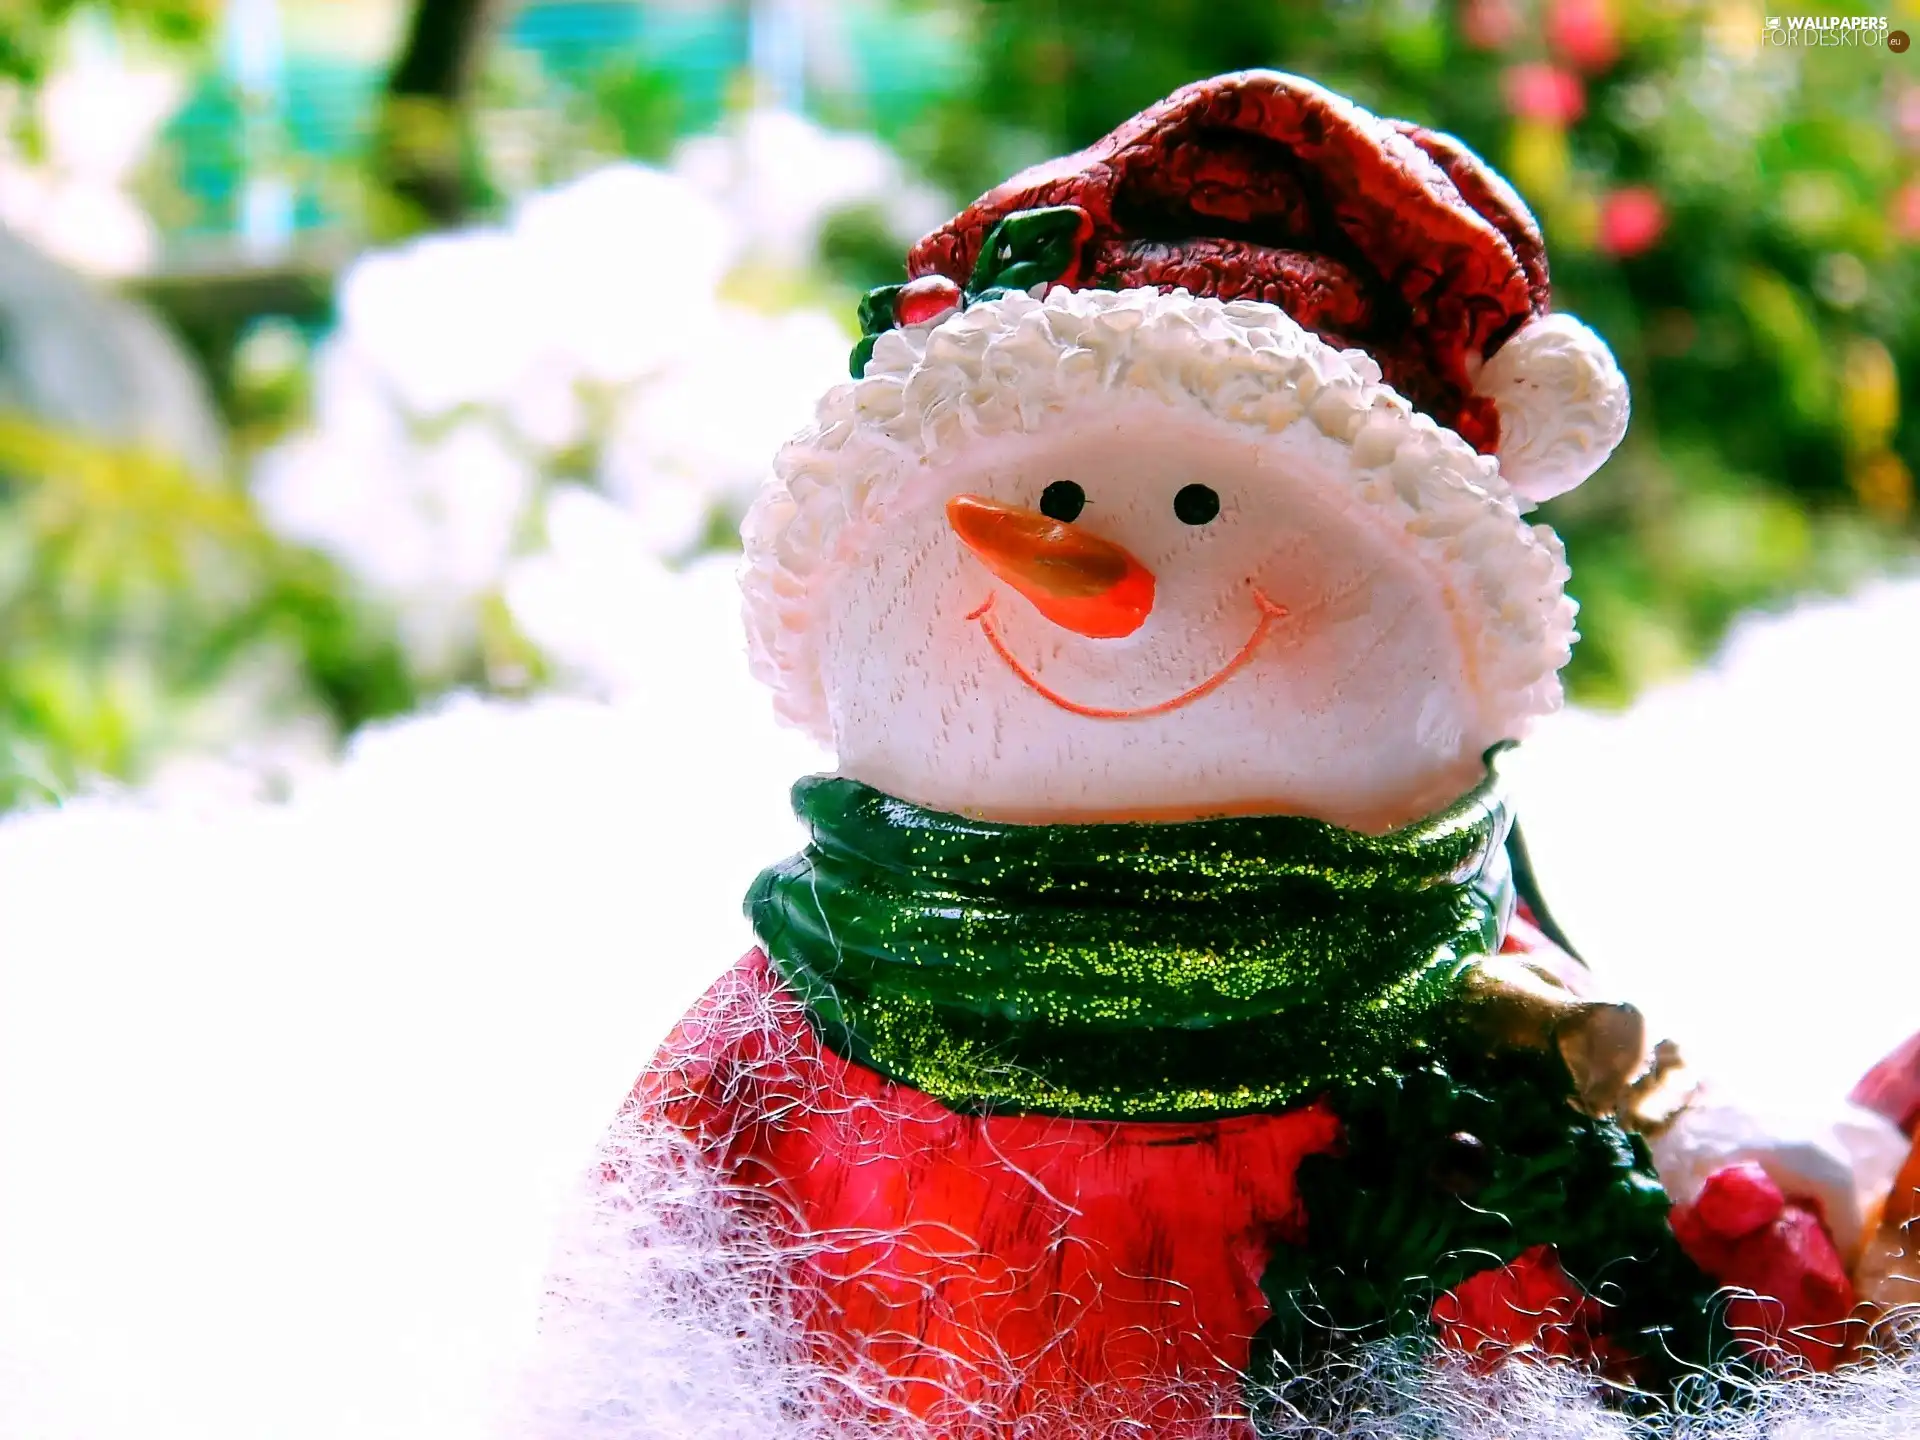 Snowman, porcelain, festive